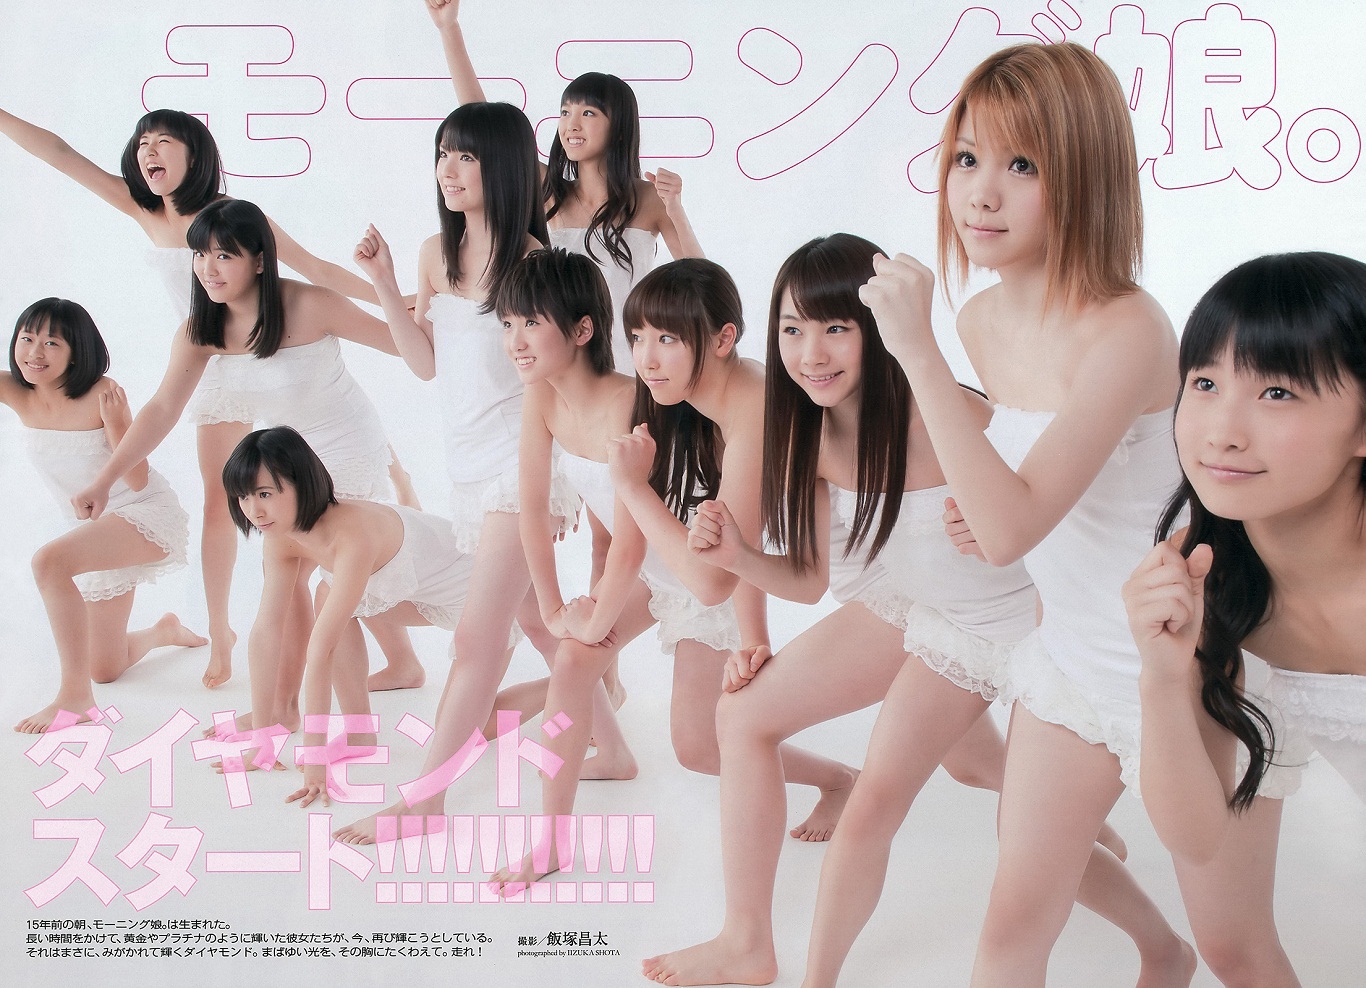 Morning Musume Weekly Playboy No 47 2012 | Beautiful Song Lyrics